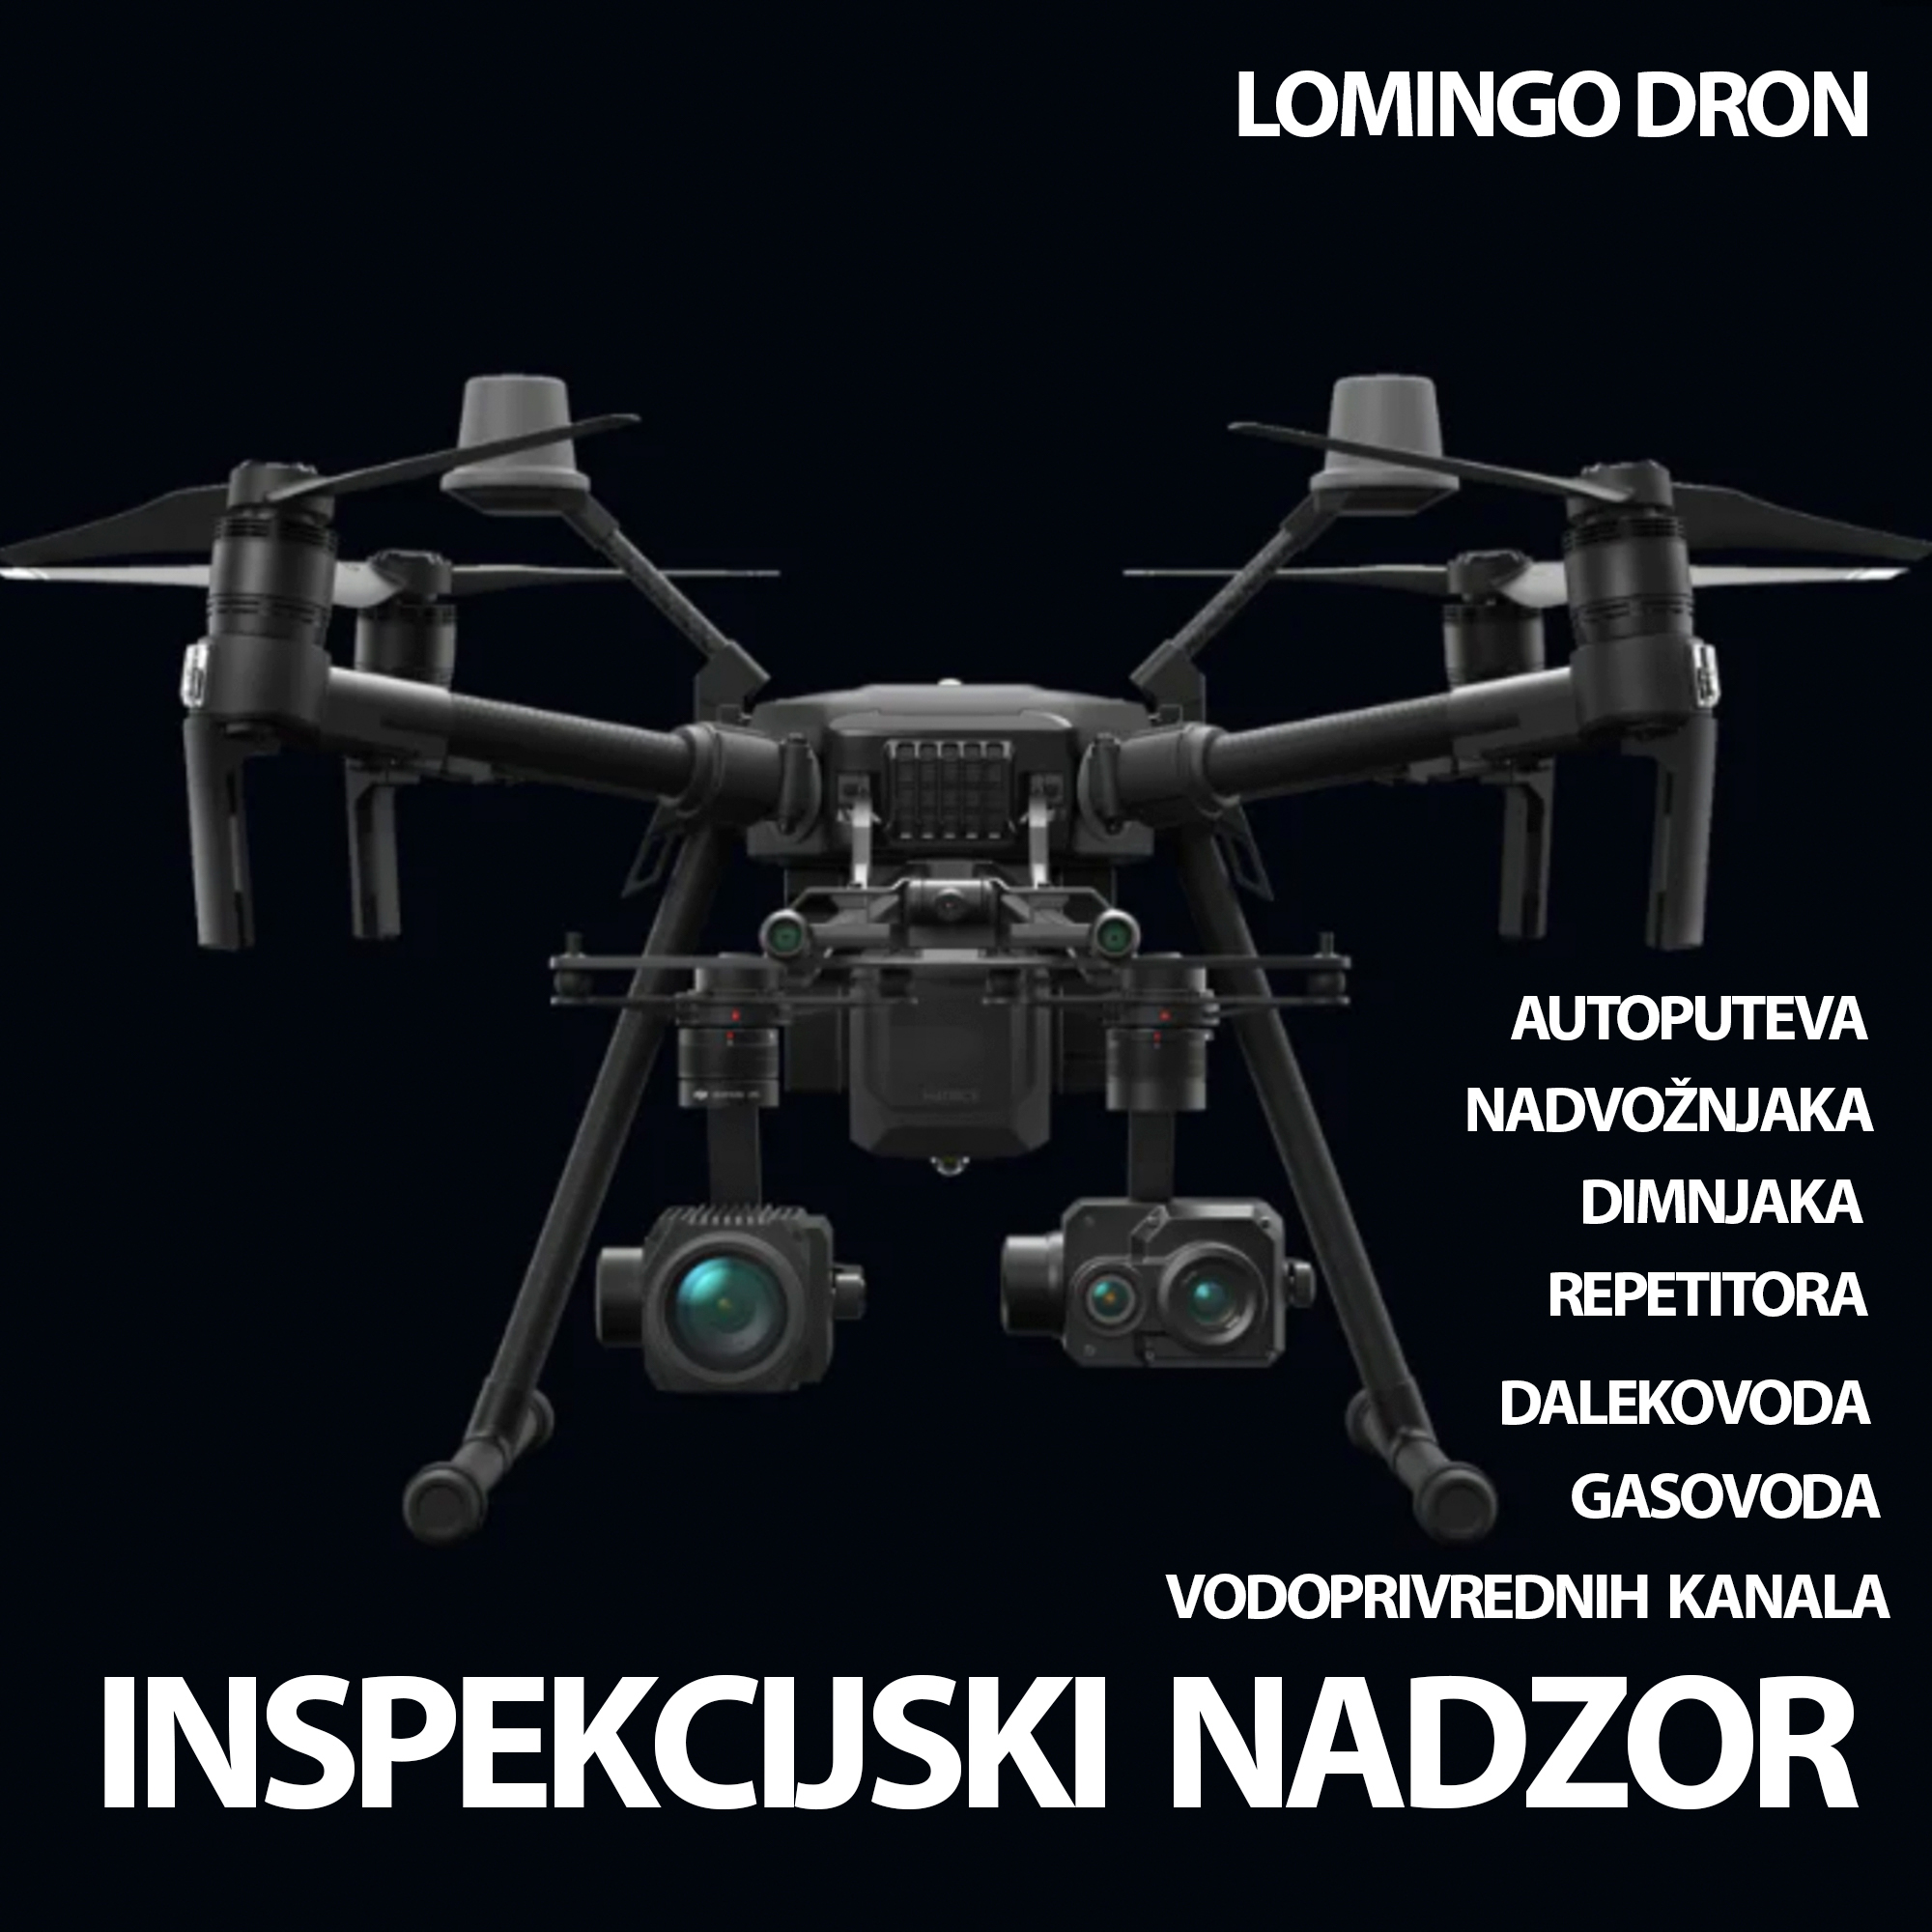 Obuka za pilota drona – škola za pilota drona